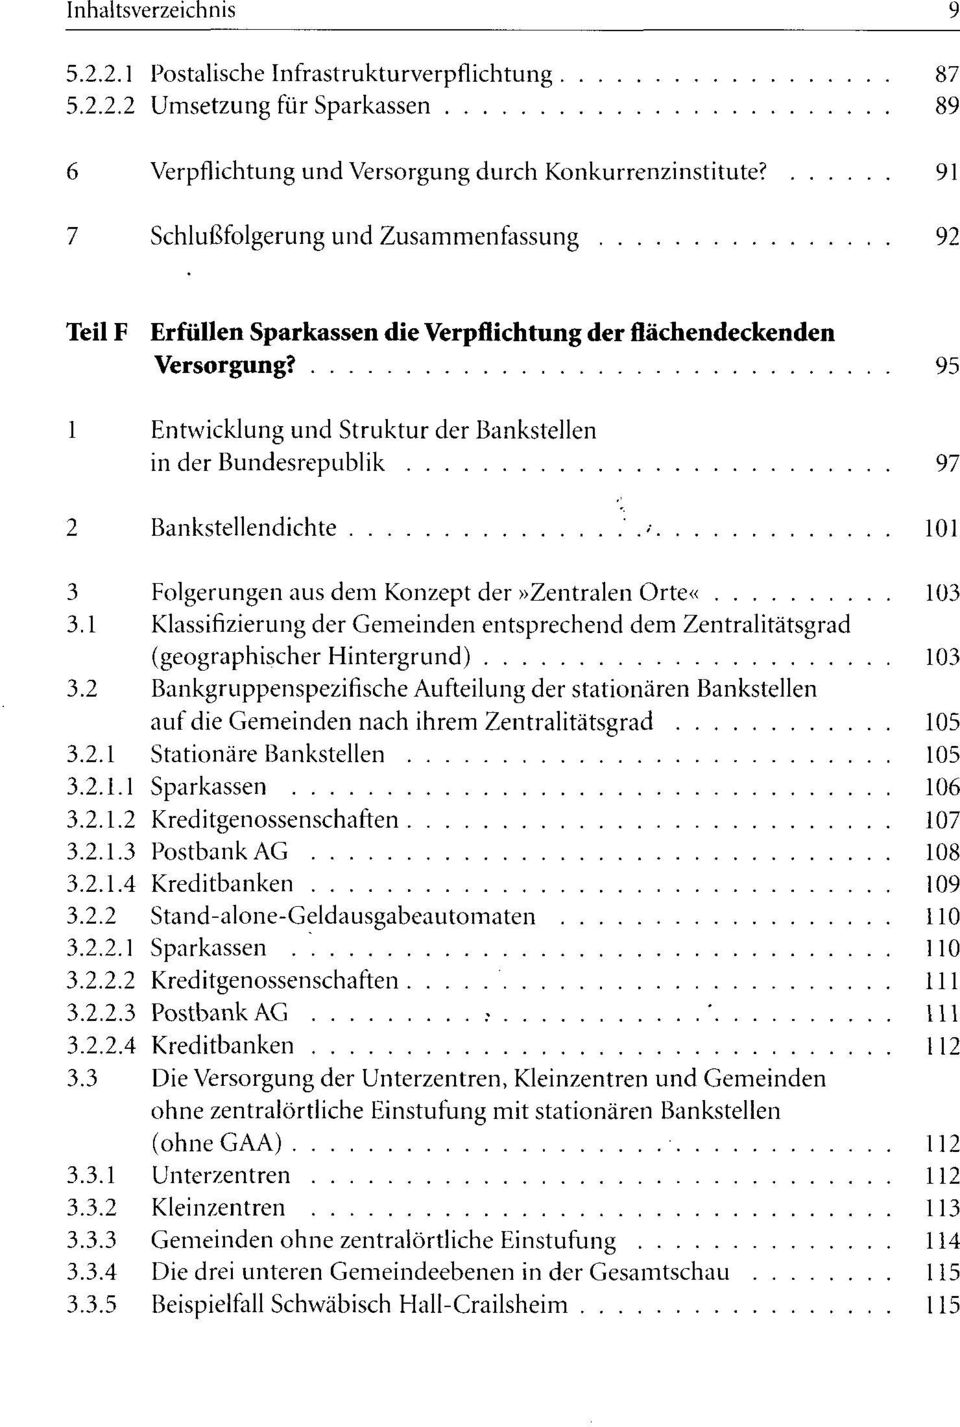 95 1 Entwicklung und Struktur der Bankstellen in der Bundesrepublik 97 2 Bankstellendichte '.- 101 3 Folgerungen aus dem Konzept der»zentralen Orte«103 3.